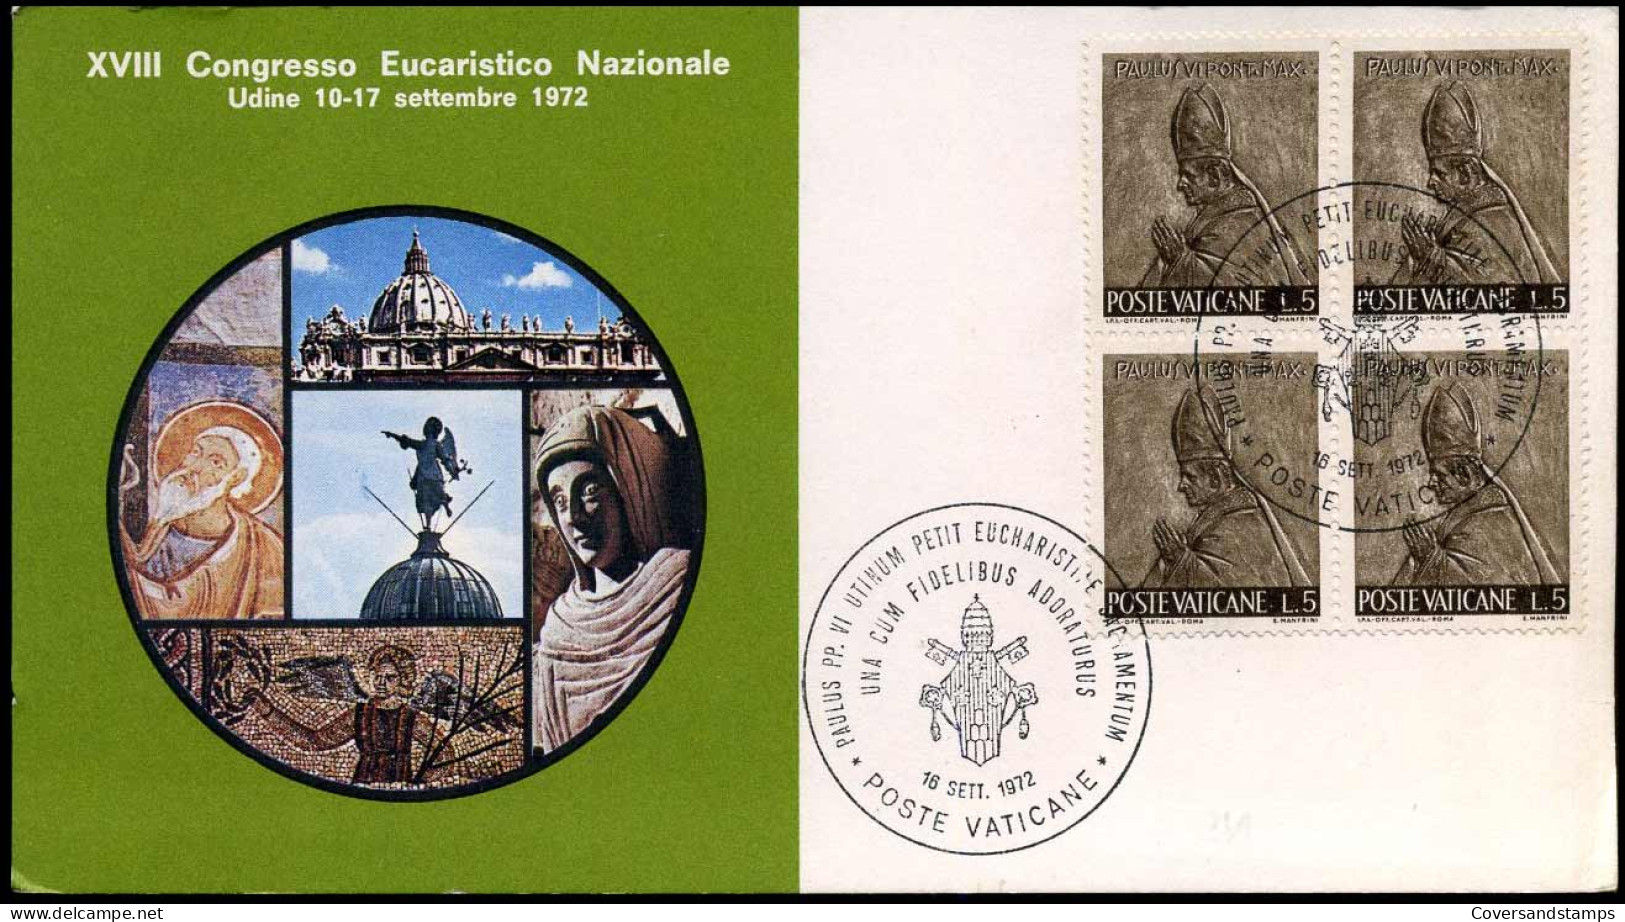 XVIII Congresso Eucaristico Nazionale Udine 1972 - Covers & Documents